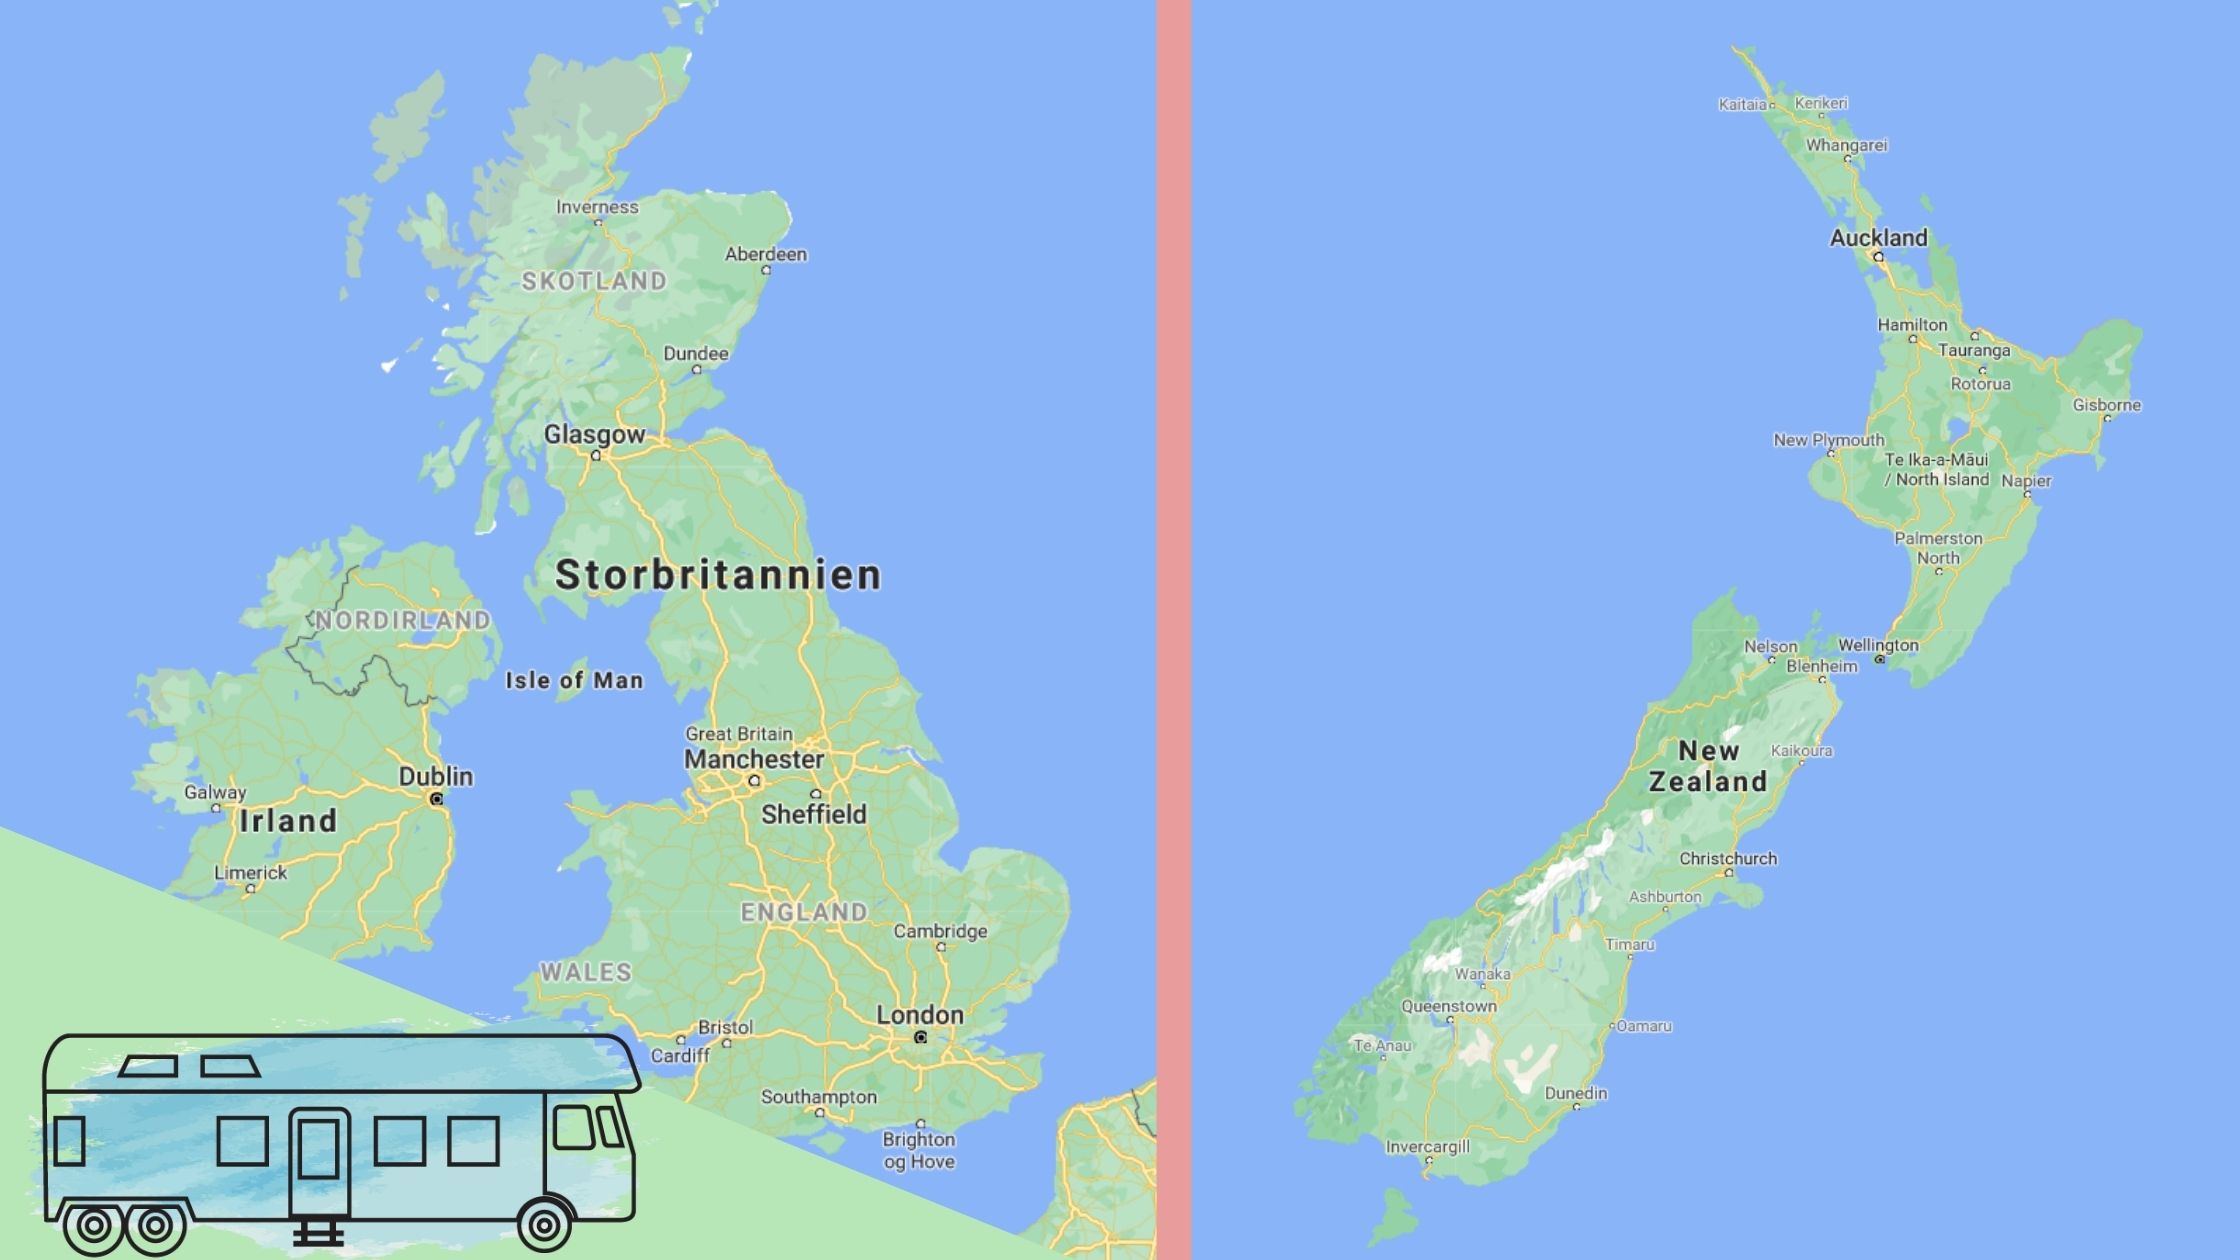 UK vs NZ standard og living